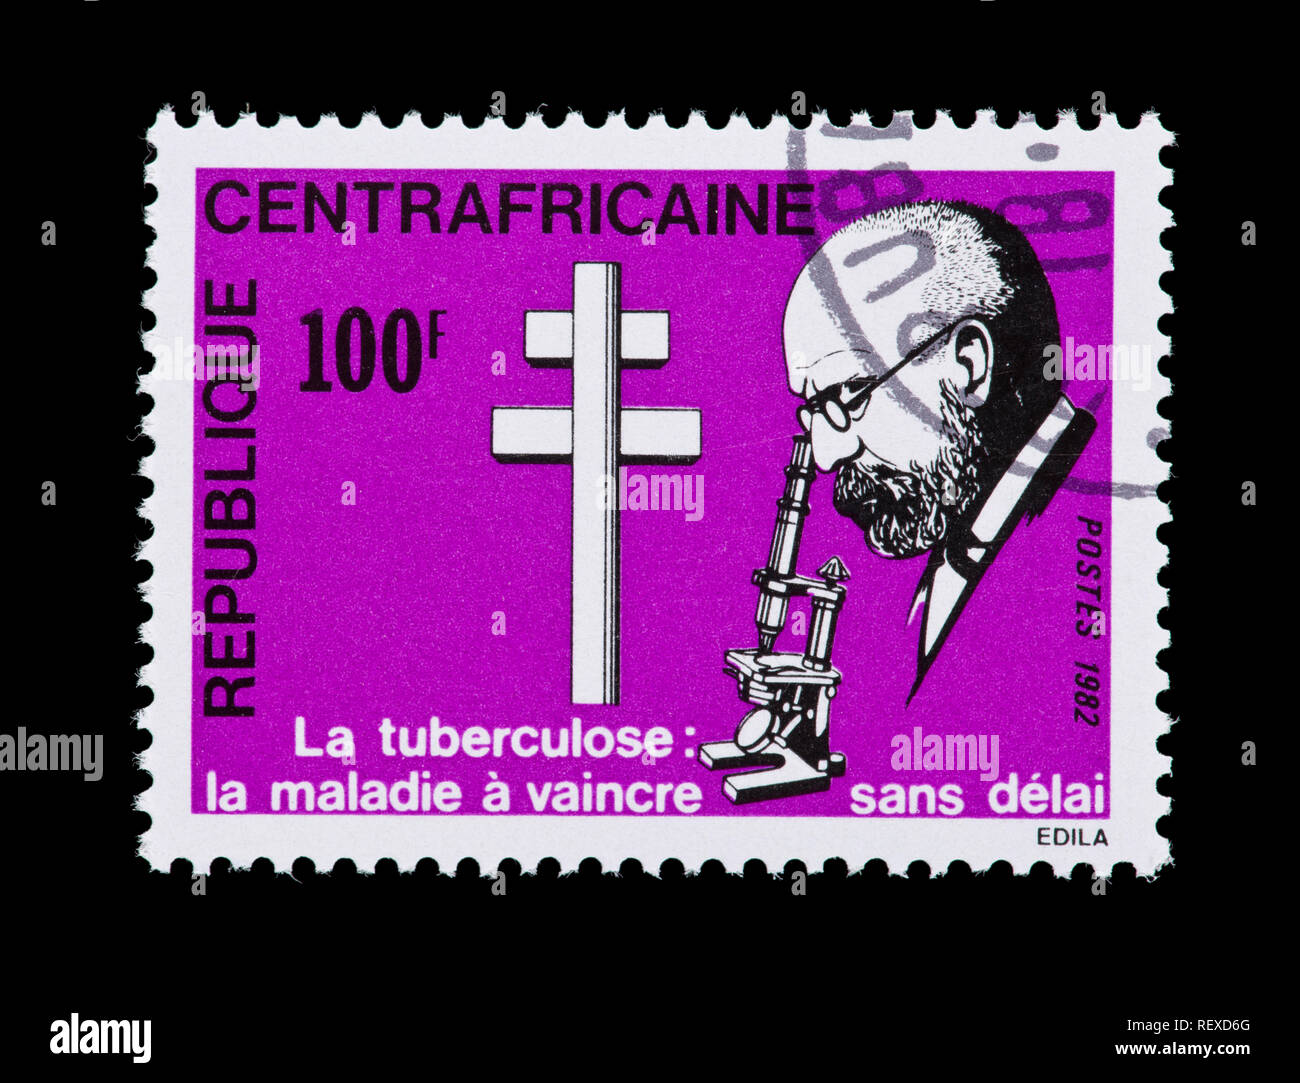 Francobollo dalla Repubblica Africana Centrale raffigurante Robert Koch, centenario della scoperta del i batteri responsabili della tubercolosi Foto Stock